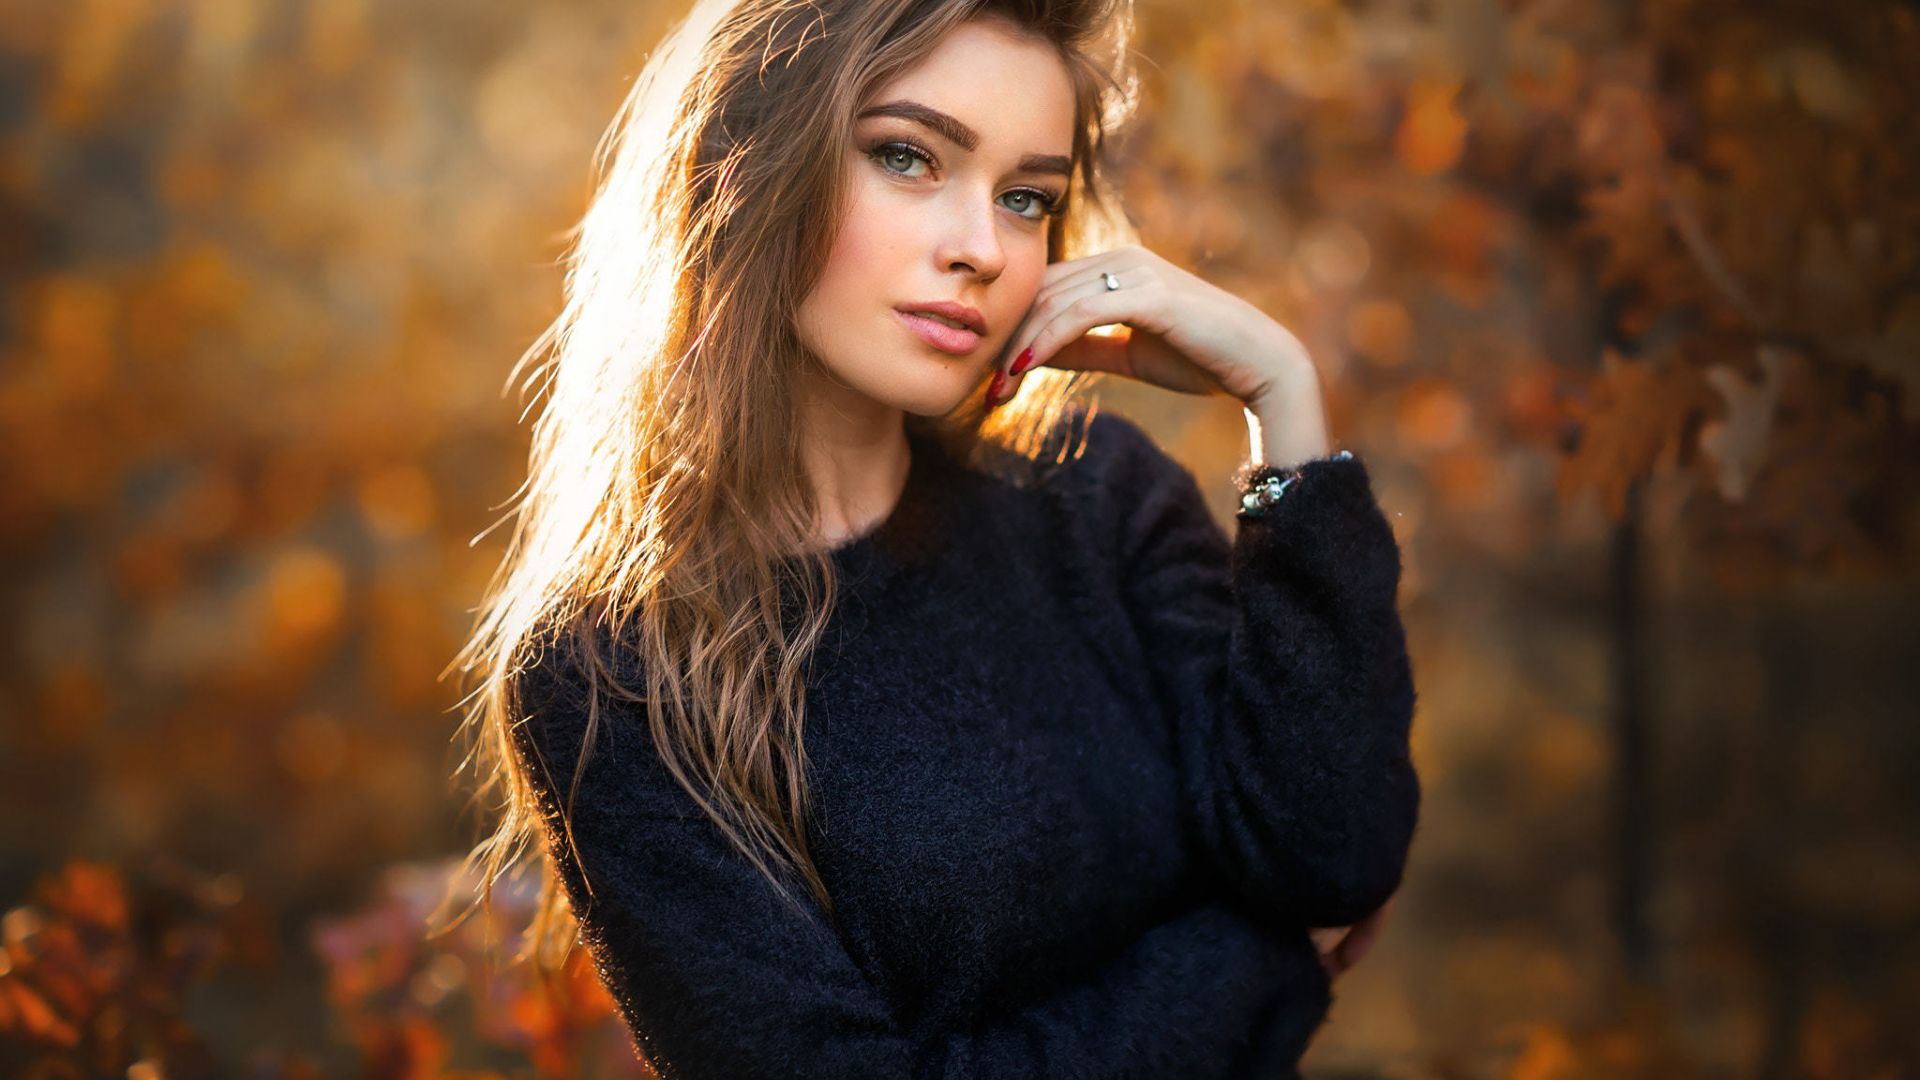 Wallpaper Autumn, outdoor, beautiful woman, brunette